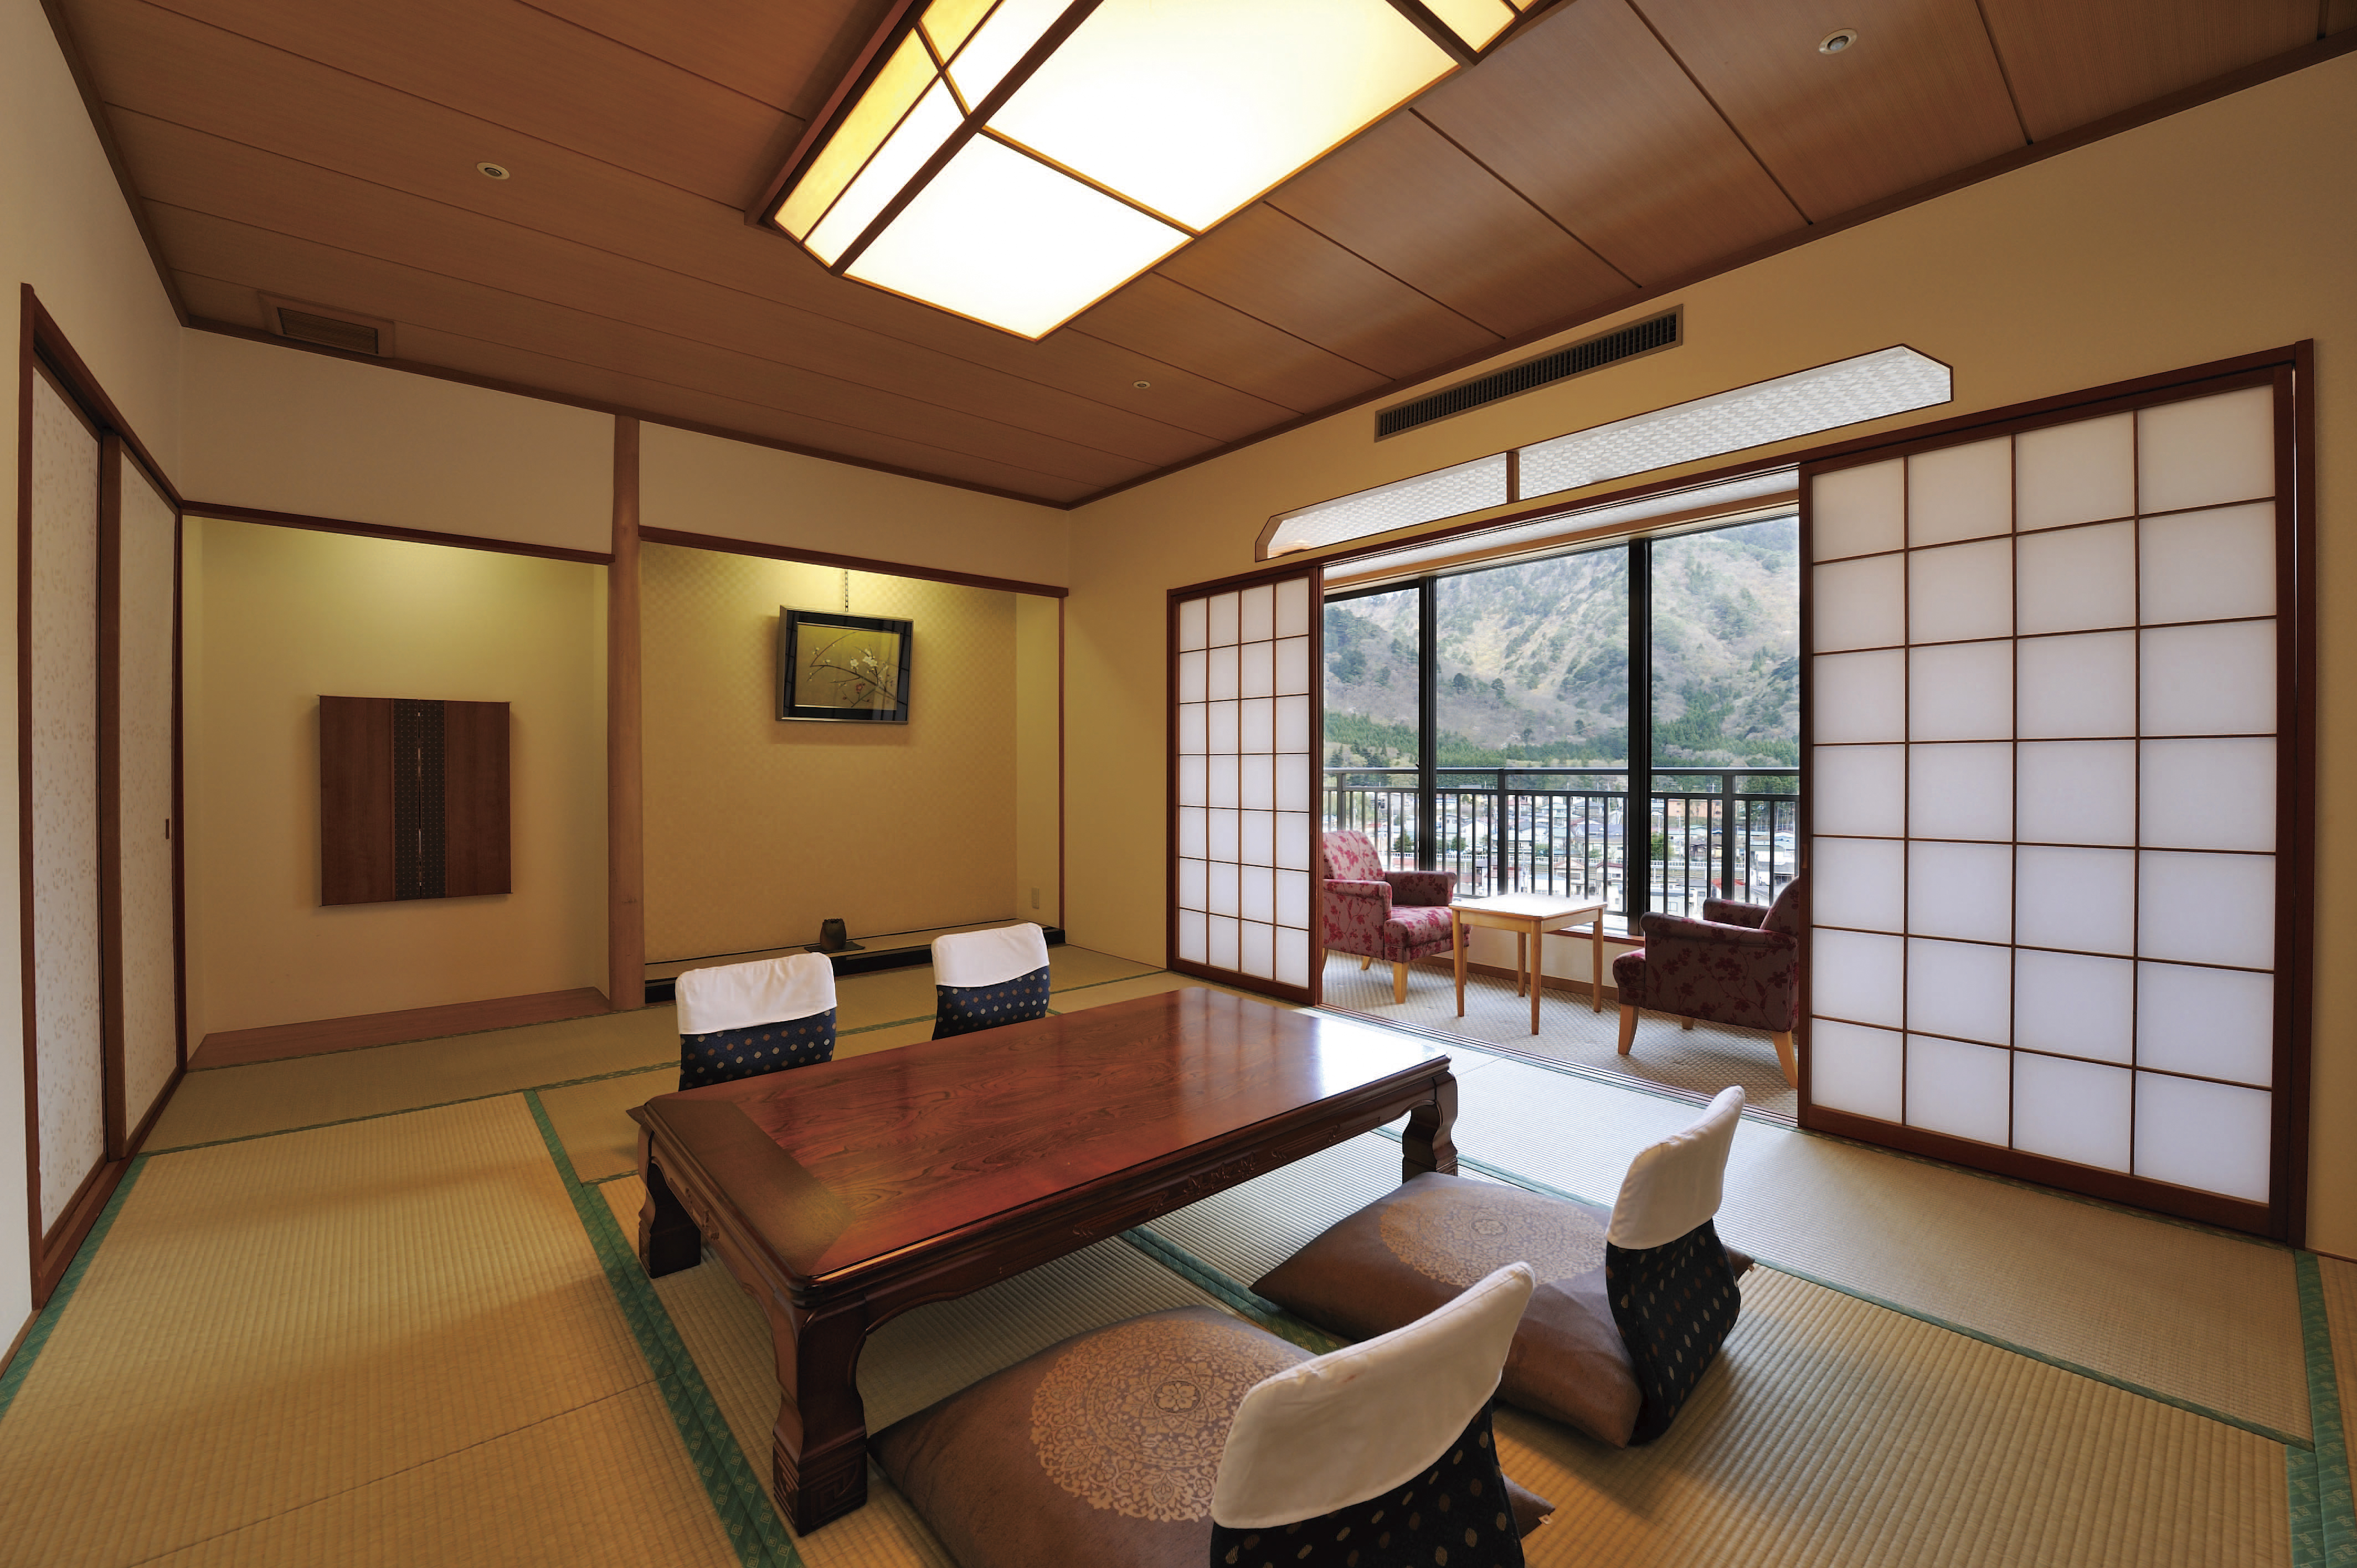 鬼怒川温泉の風景を眺める客室